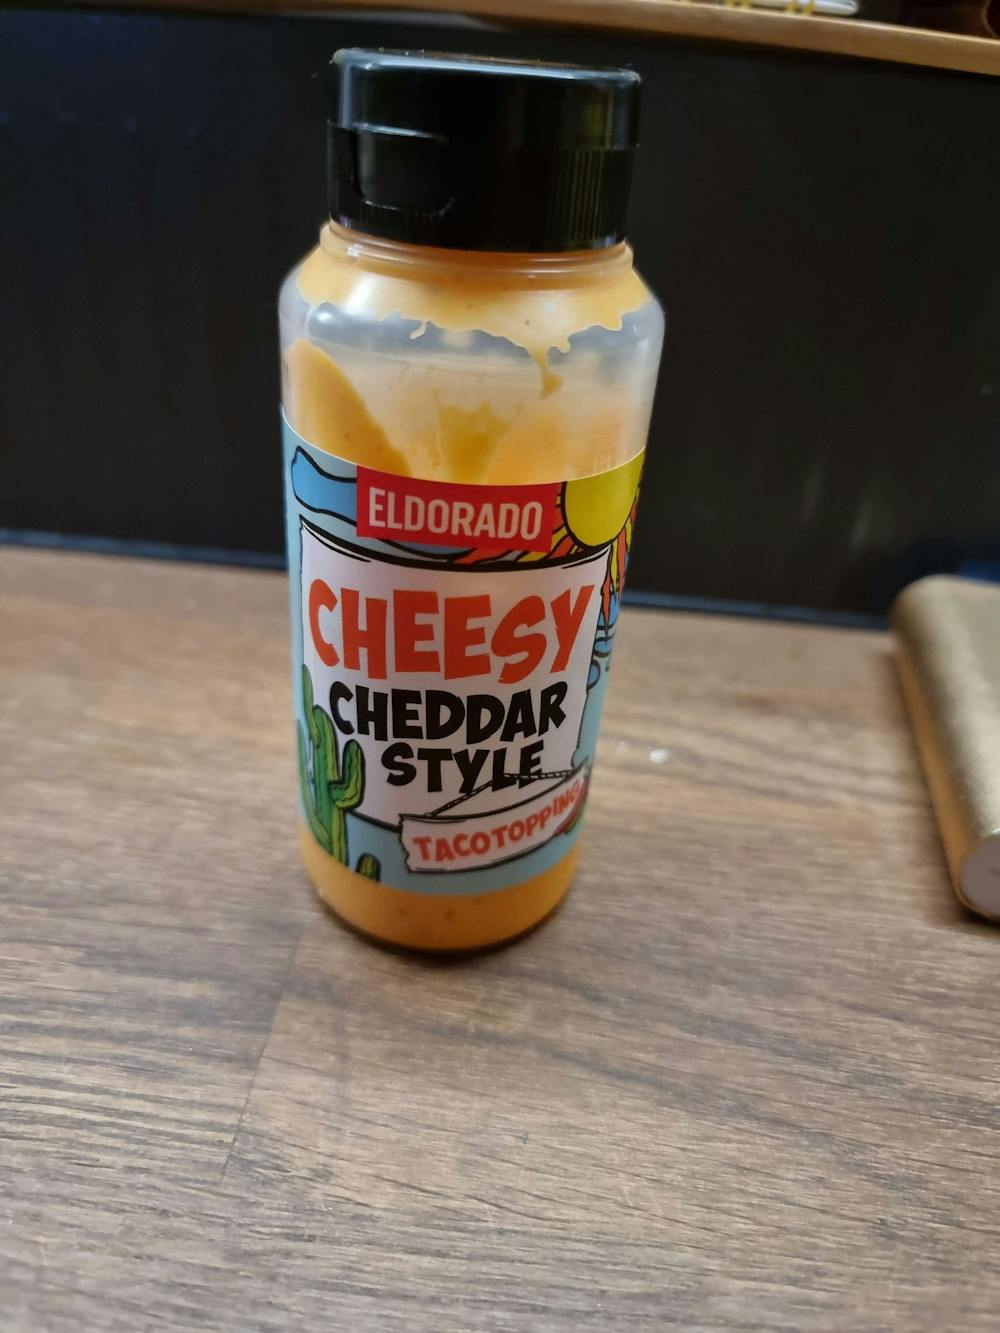 Cheesy cheddar style, Eldorado